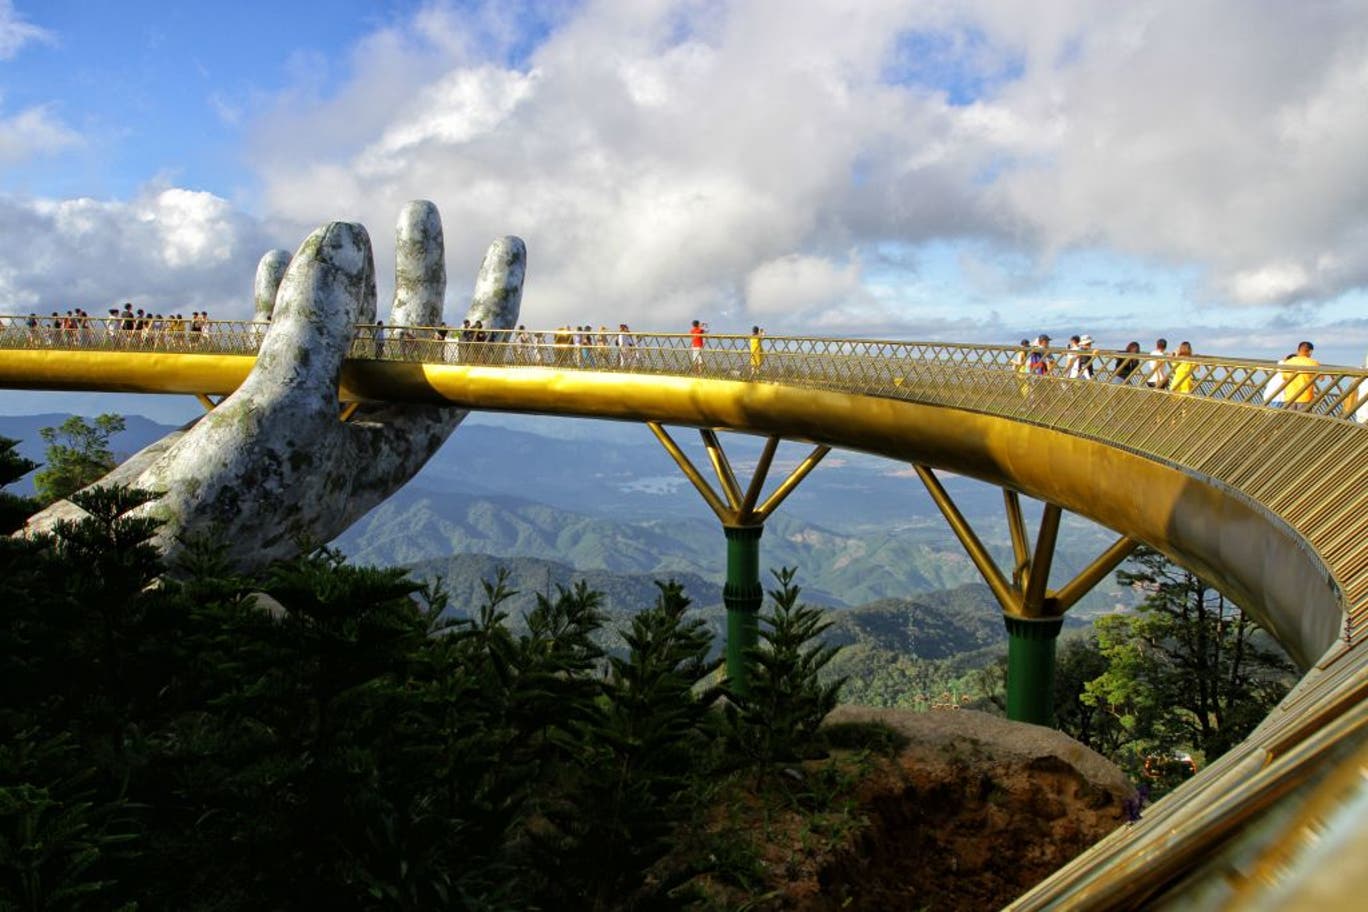 Cầu Vàng ở Đà Nẵng lọt top '14 cây cầu ngoạn mục nhất thế giới' của Independent: Tuyệt tác giữa mây trời!